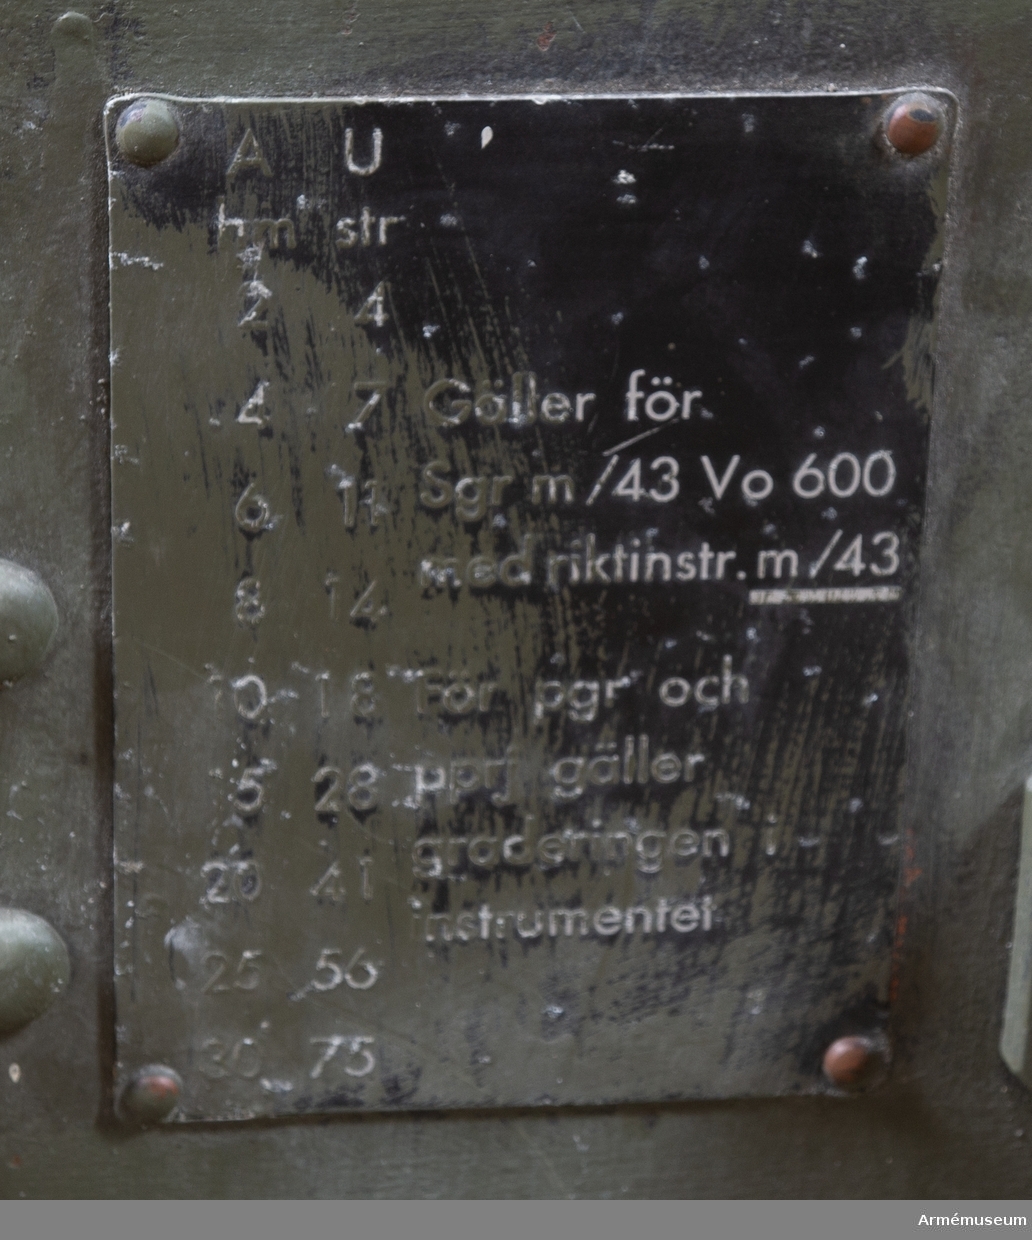 Pansarvärnskanon m/1943, system Bofors, med tillbehör. Vikt: 975 kg. Kaliber: 57 mm. Tillv.nr: 166.
Eldrörets vikt: 310 kg, märkt: 57 mm pvkan m/43 B Bofors 1946 B vikt 310. Stålhjul med halvmassivgummihjul, d:700 mm. V -lavett. Kikarsikte m/1943, Nr:161. Största skottvidd: 8500 m. Rekylkraft: 2100 kg.
Tillbehör: 1 pjäslåda nr: 161 (11 904 62000), 1 pjäsväska nr: 161 (11 904 61000), 1 kikarlåda med kikarsikte m/1943, nr:161. M4805-751011, 1 rengöringskolv, 1 viskare, 1 viskarstång med fodral av väv, 2 draglinor, 1 kapell för pjäs, 1 mynningsskydd av väv, 1 ren av läder med spänne och krok.